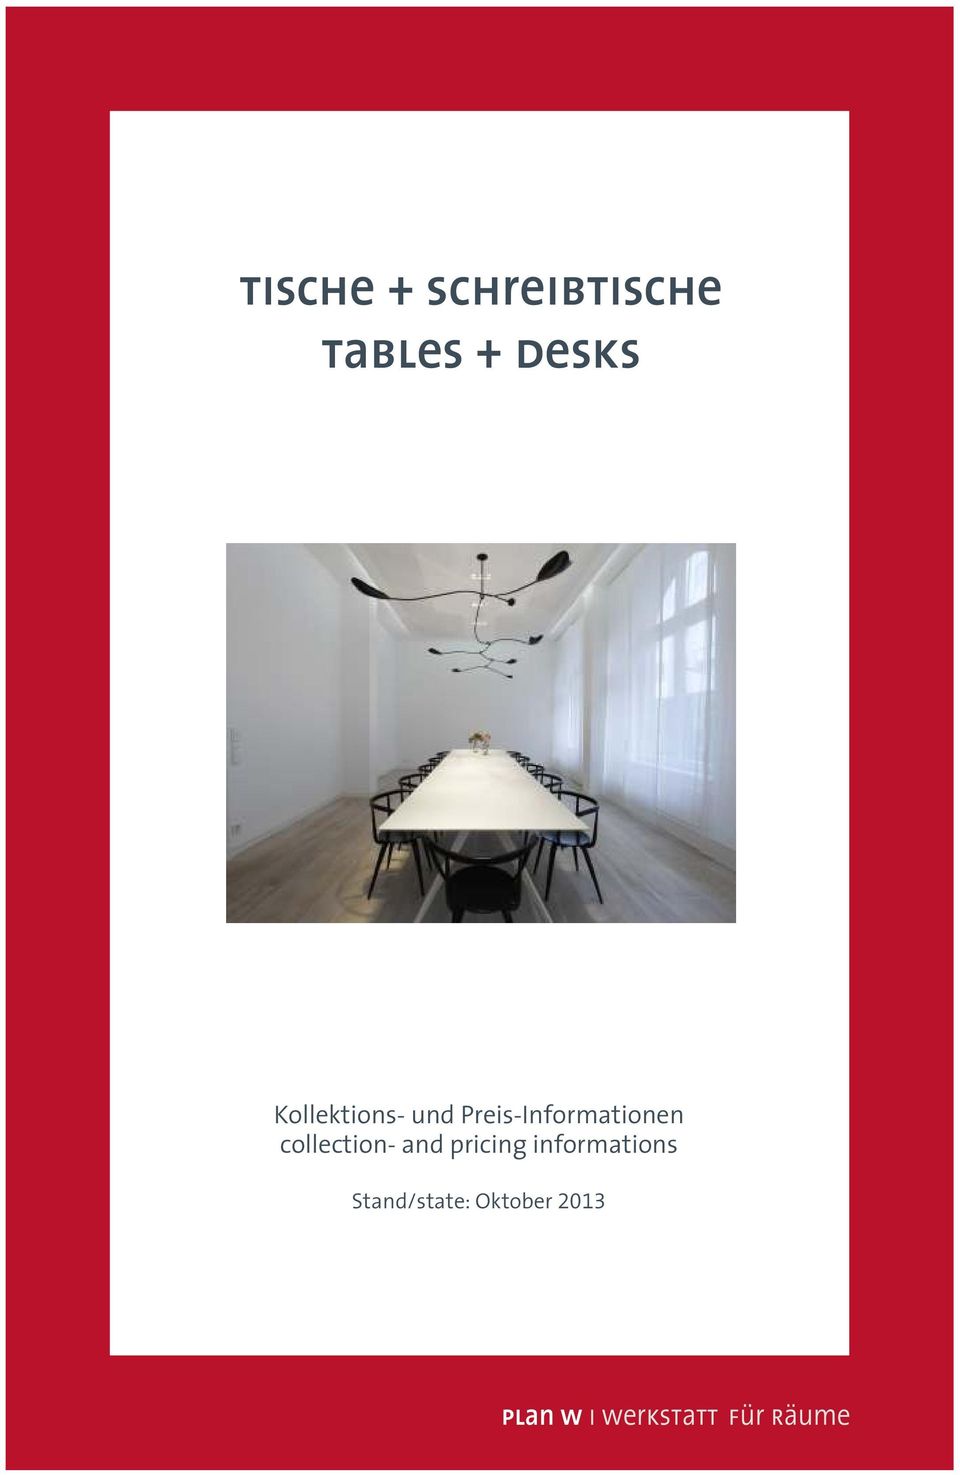 Preis-Informationen collection-